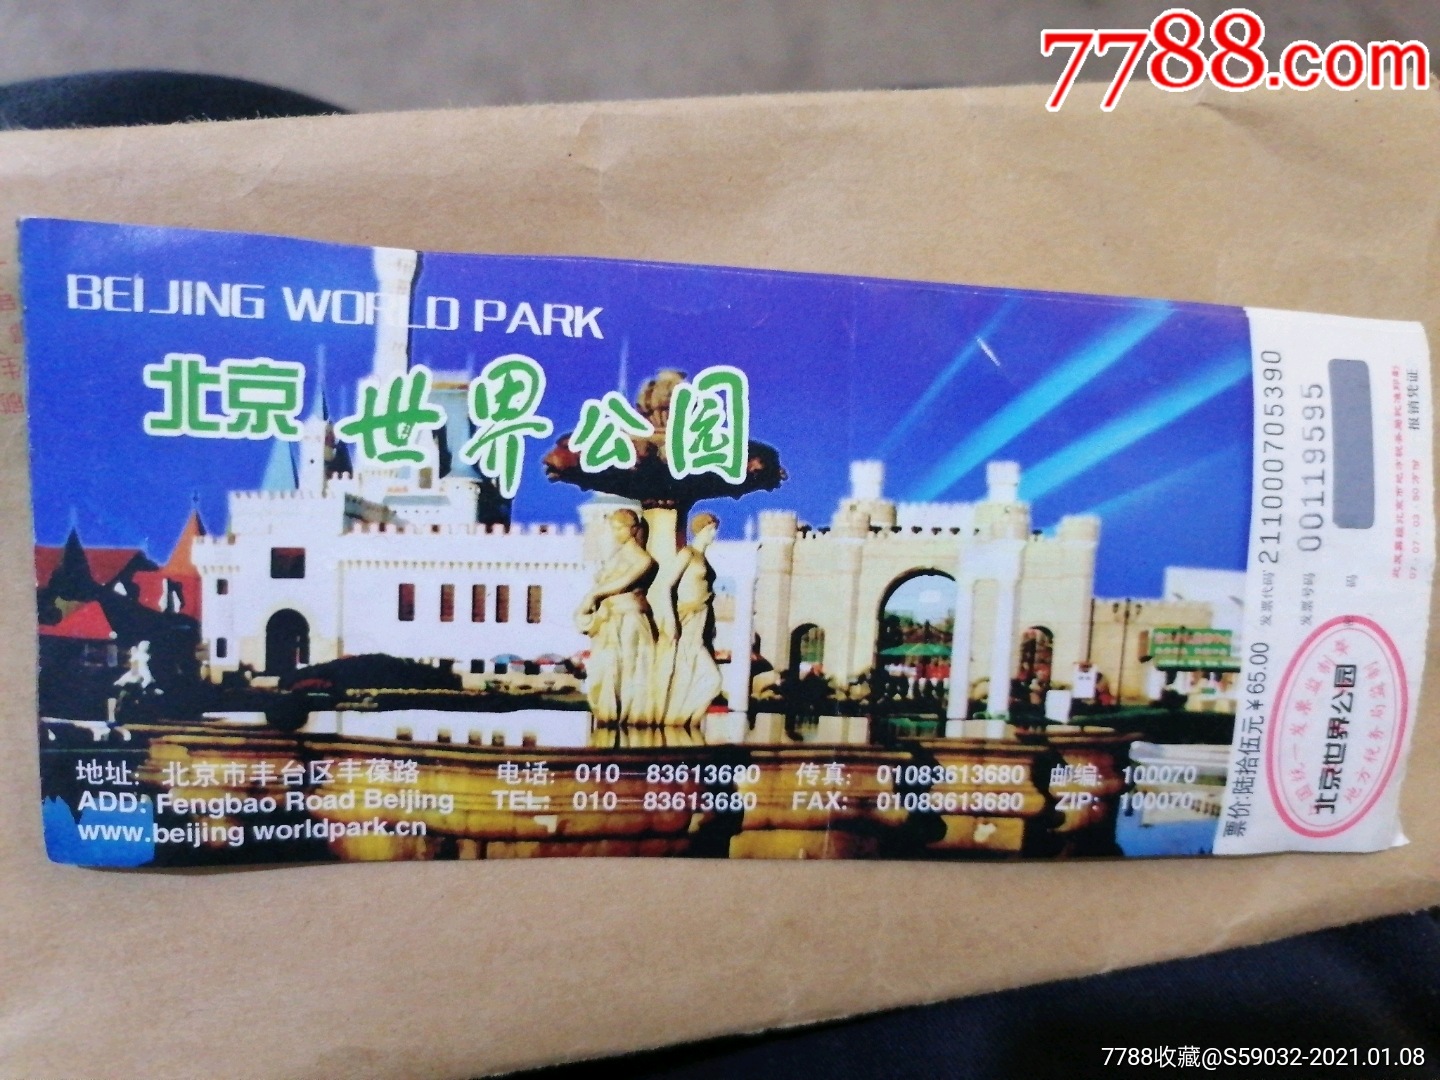 北京世界公园门票(三张)